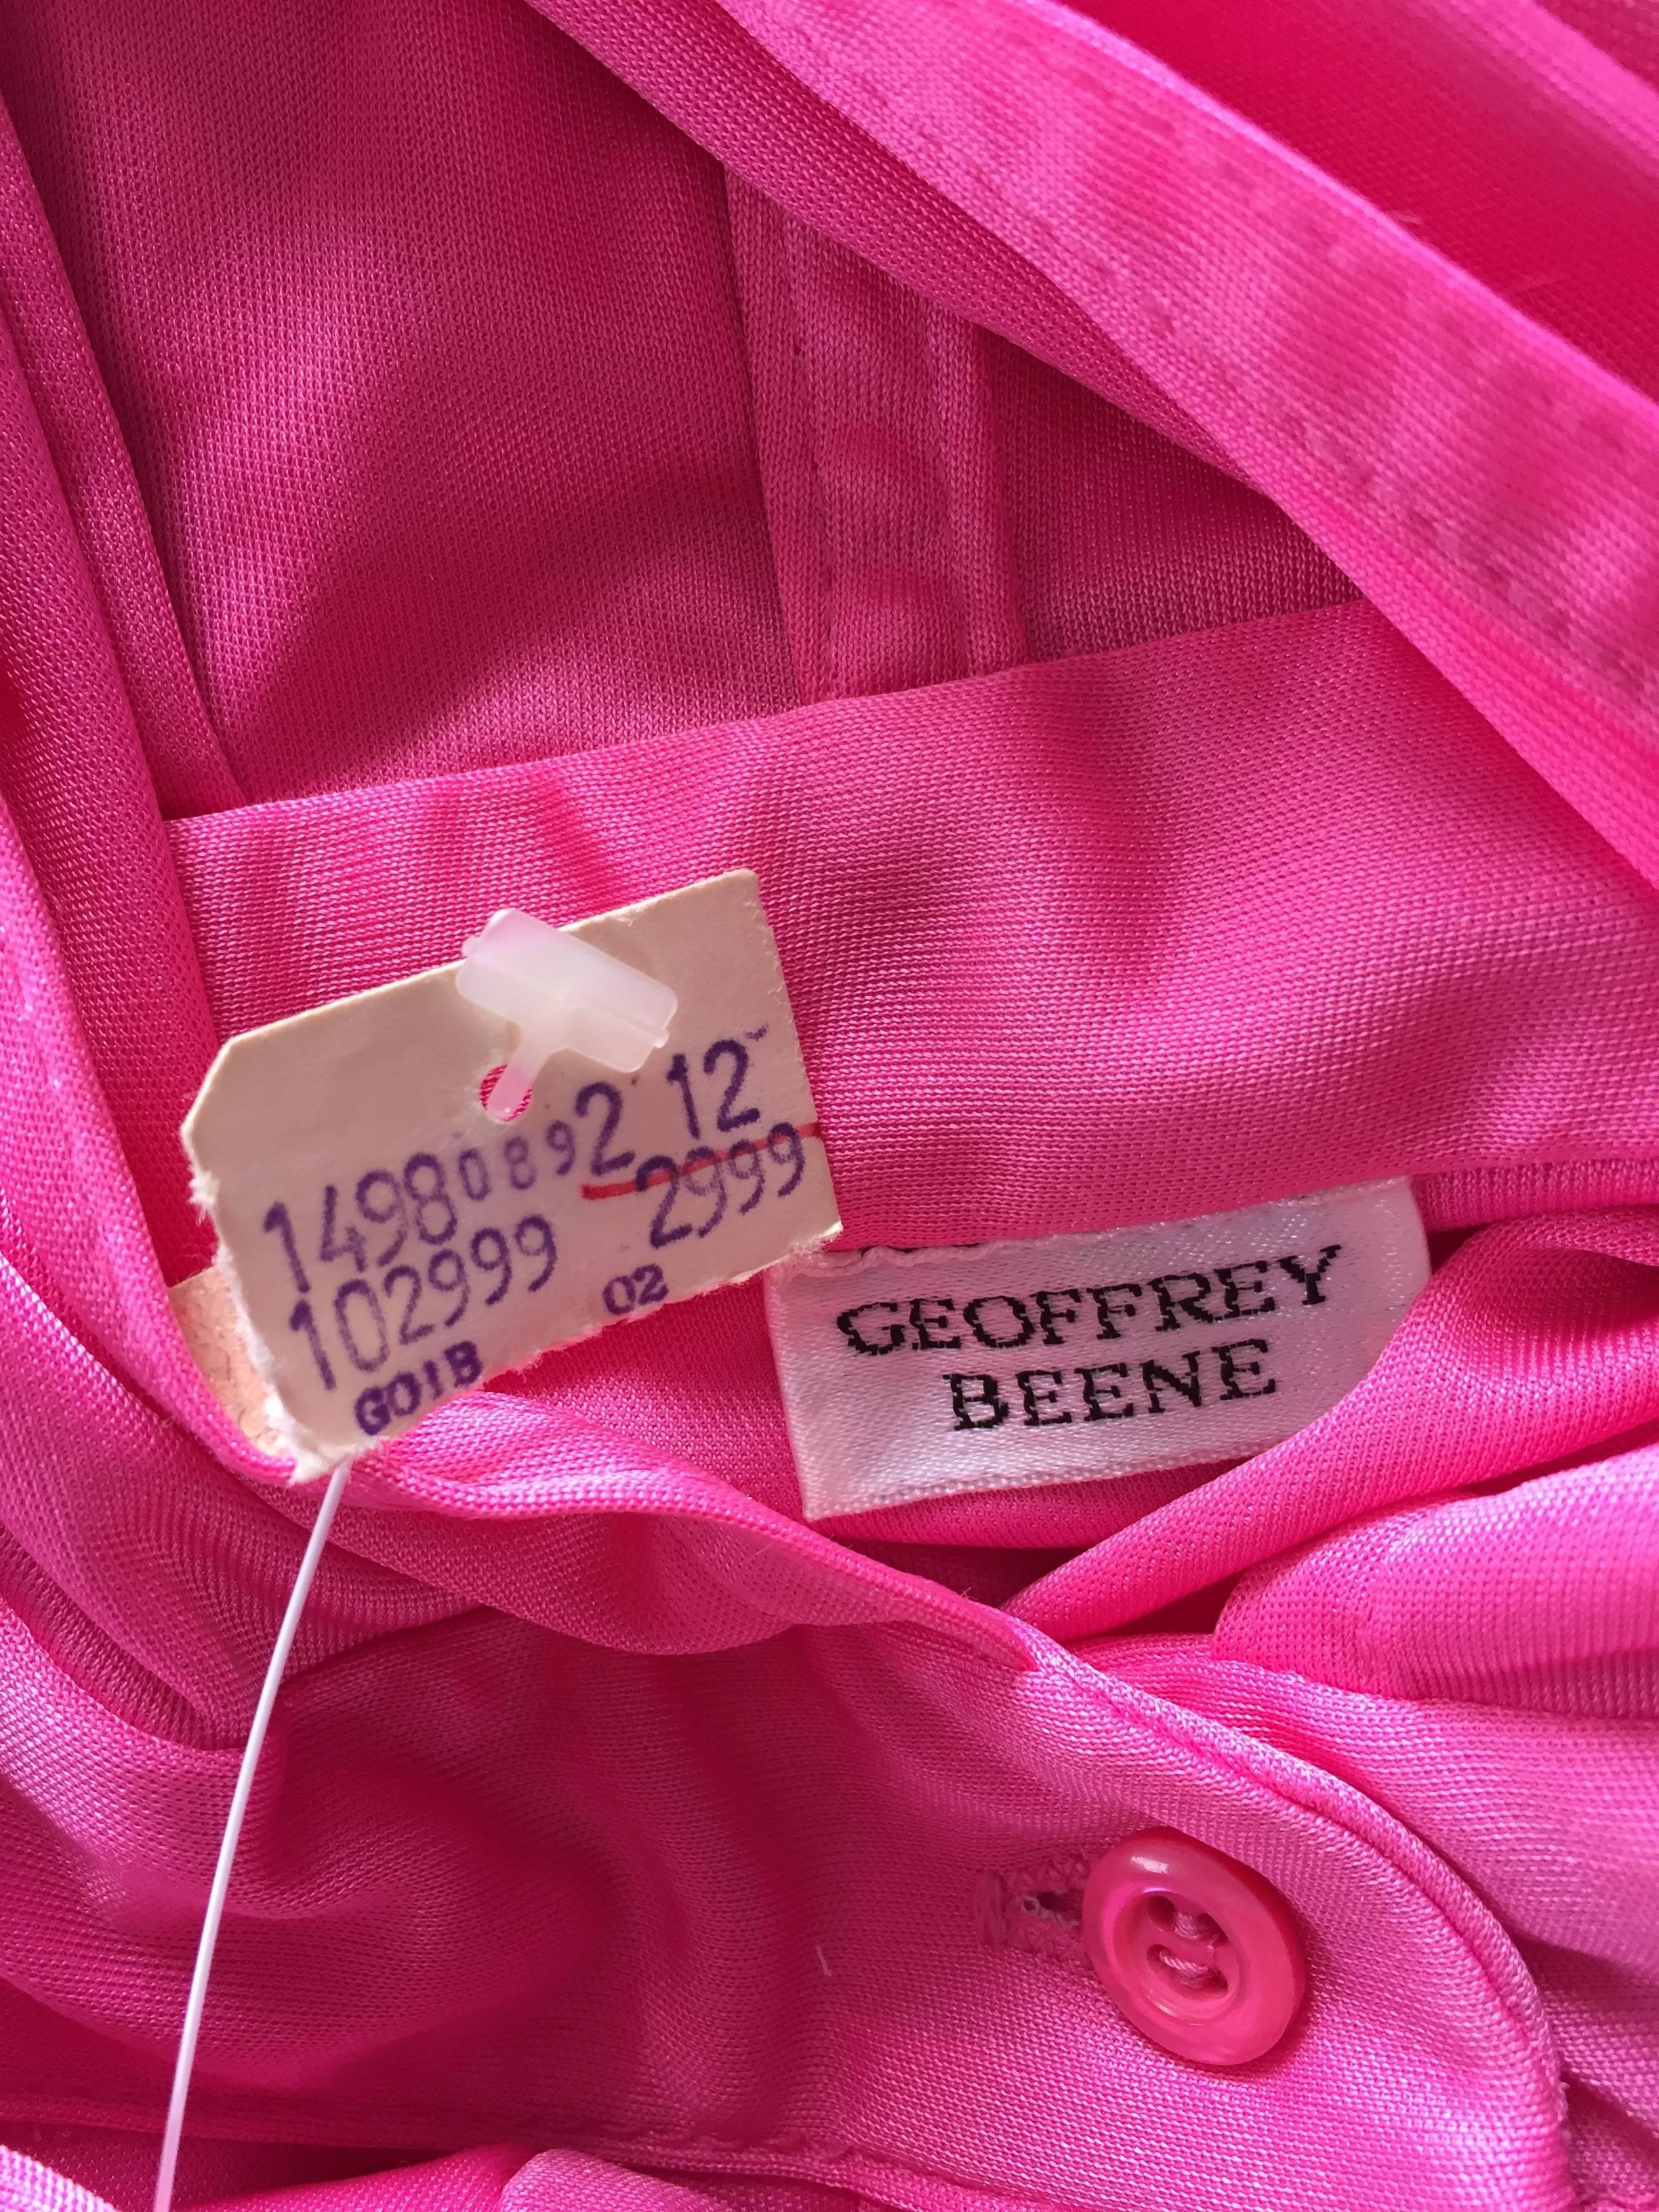 Geoffrey Beene Vintage Pink Hooded Caftan Long Sleeve Maxi Dress 4